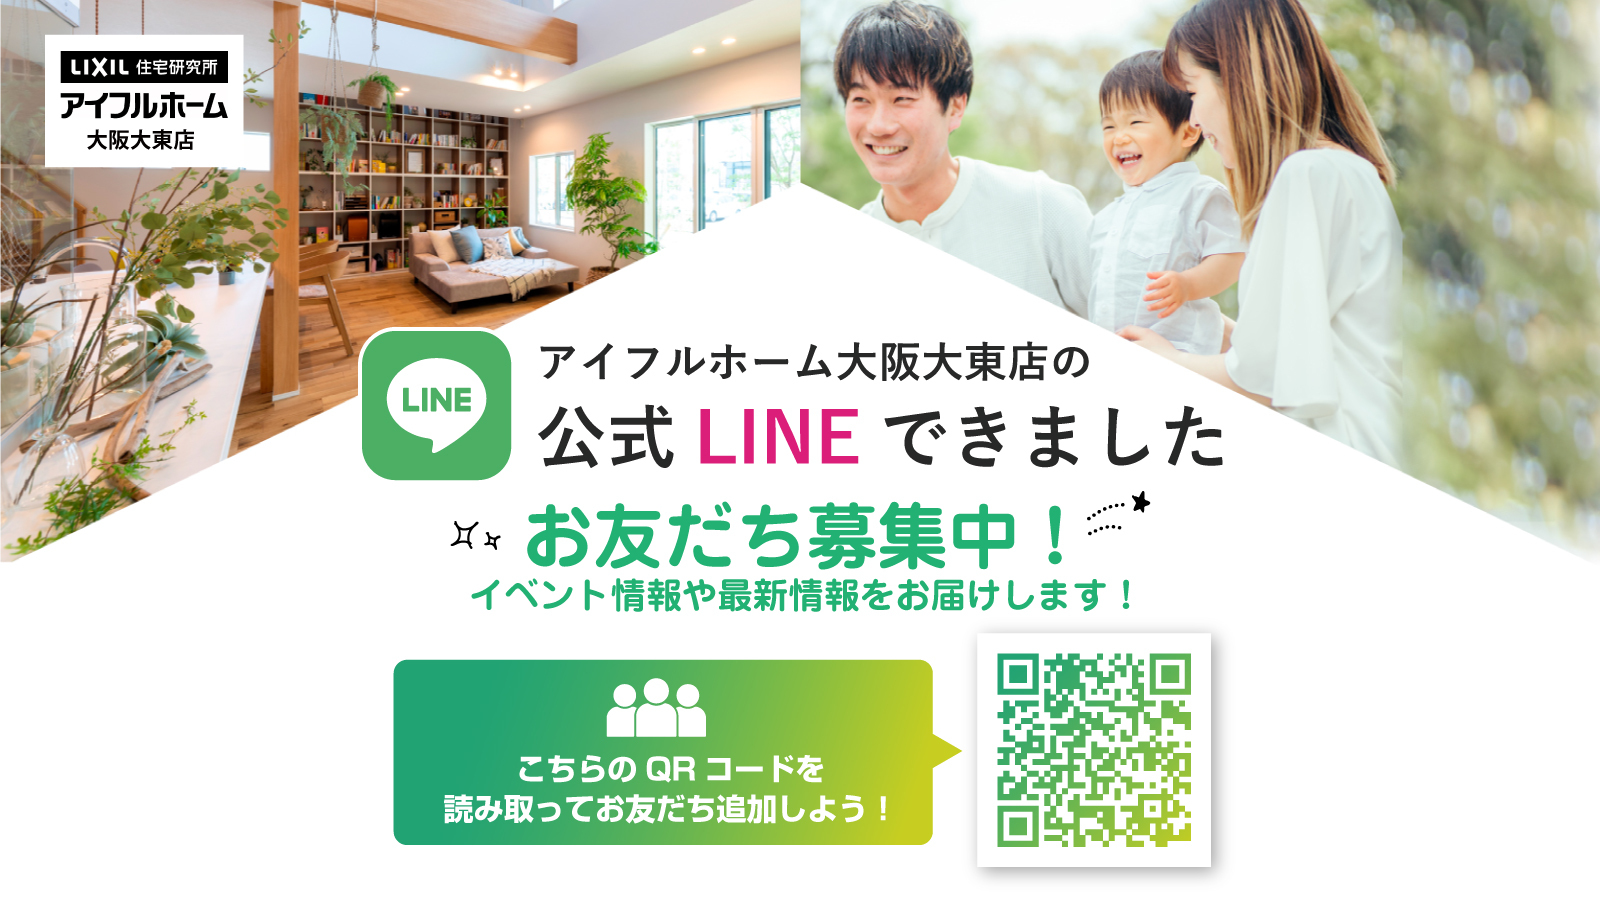 アイフルホーム大阪大東店公式LINE